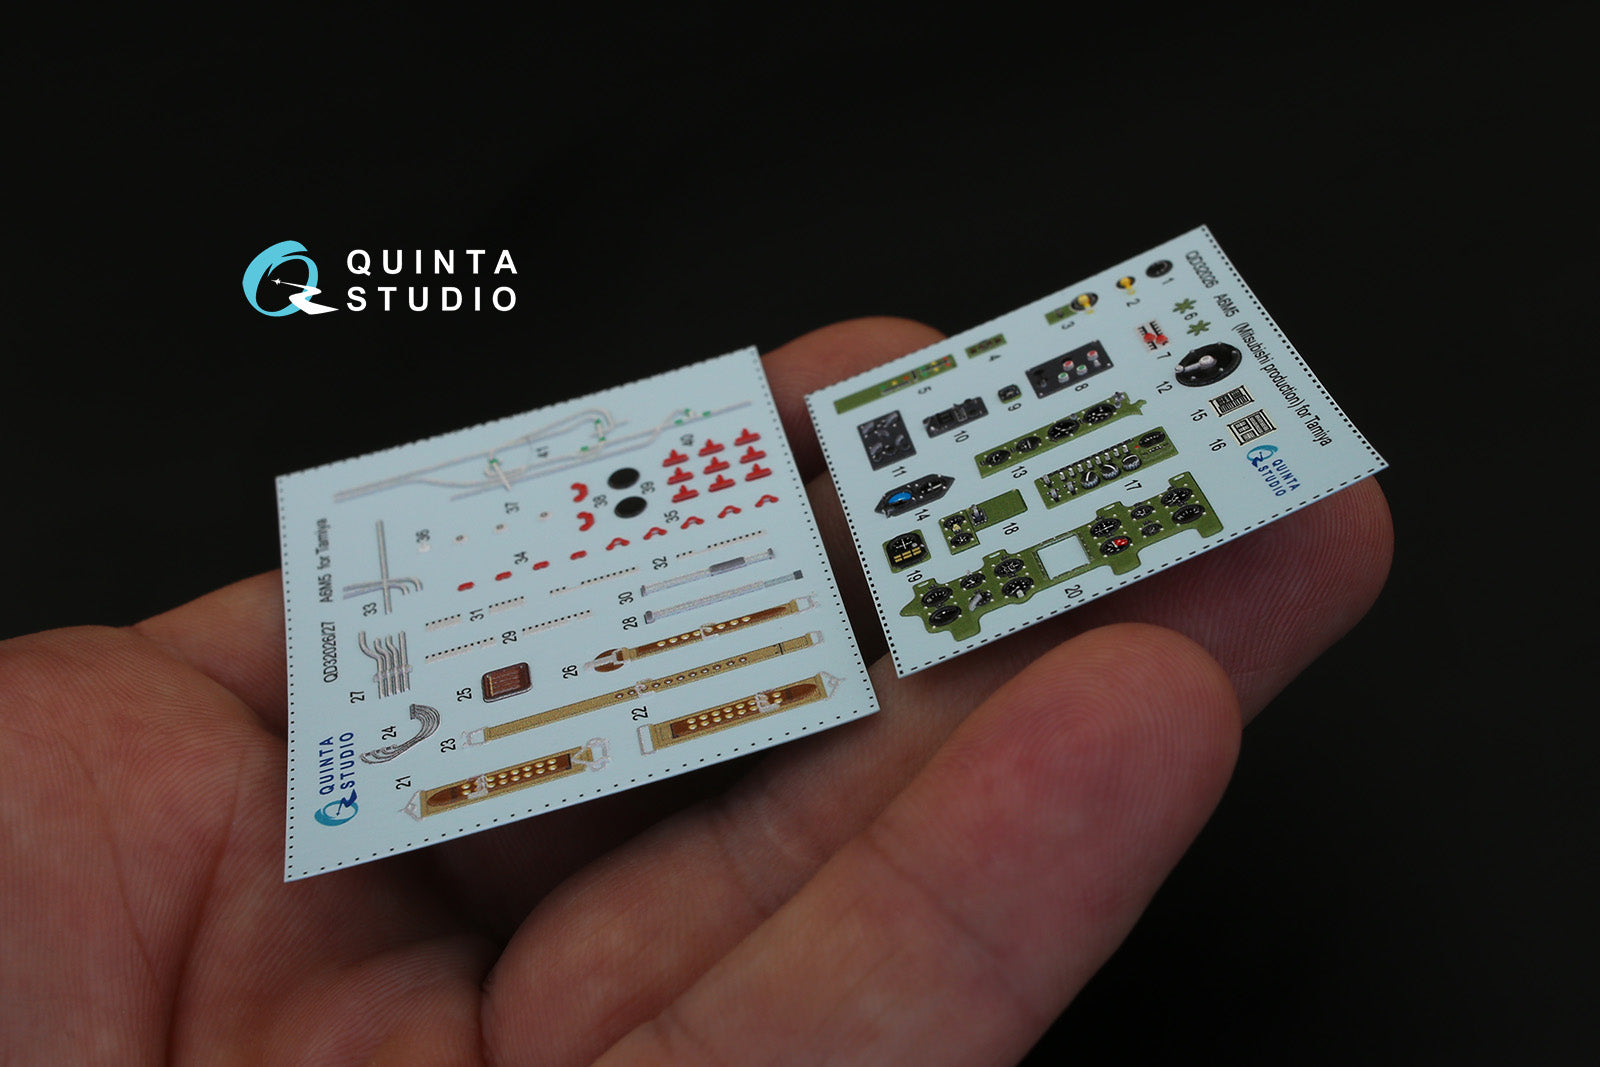 Quinta Studio - 1/32 A6M5 (Mitsubishi prod.) QD32026 for Tamiya kit